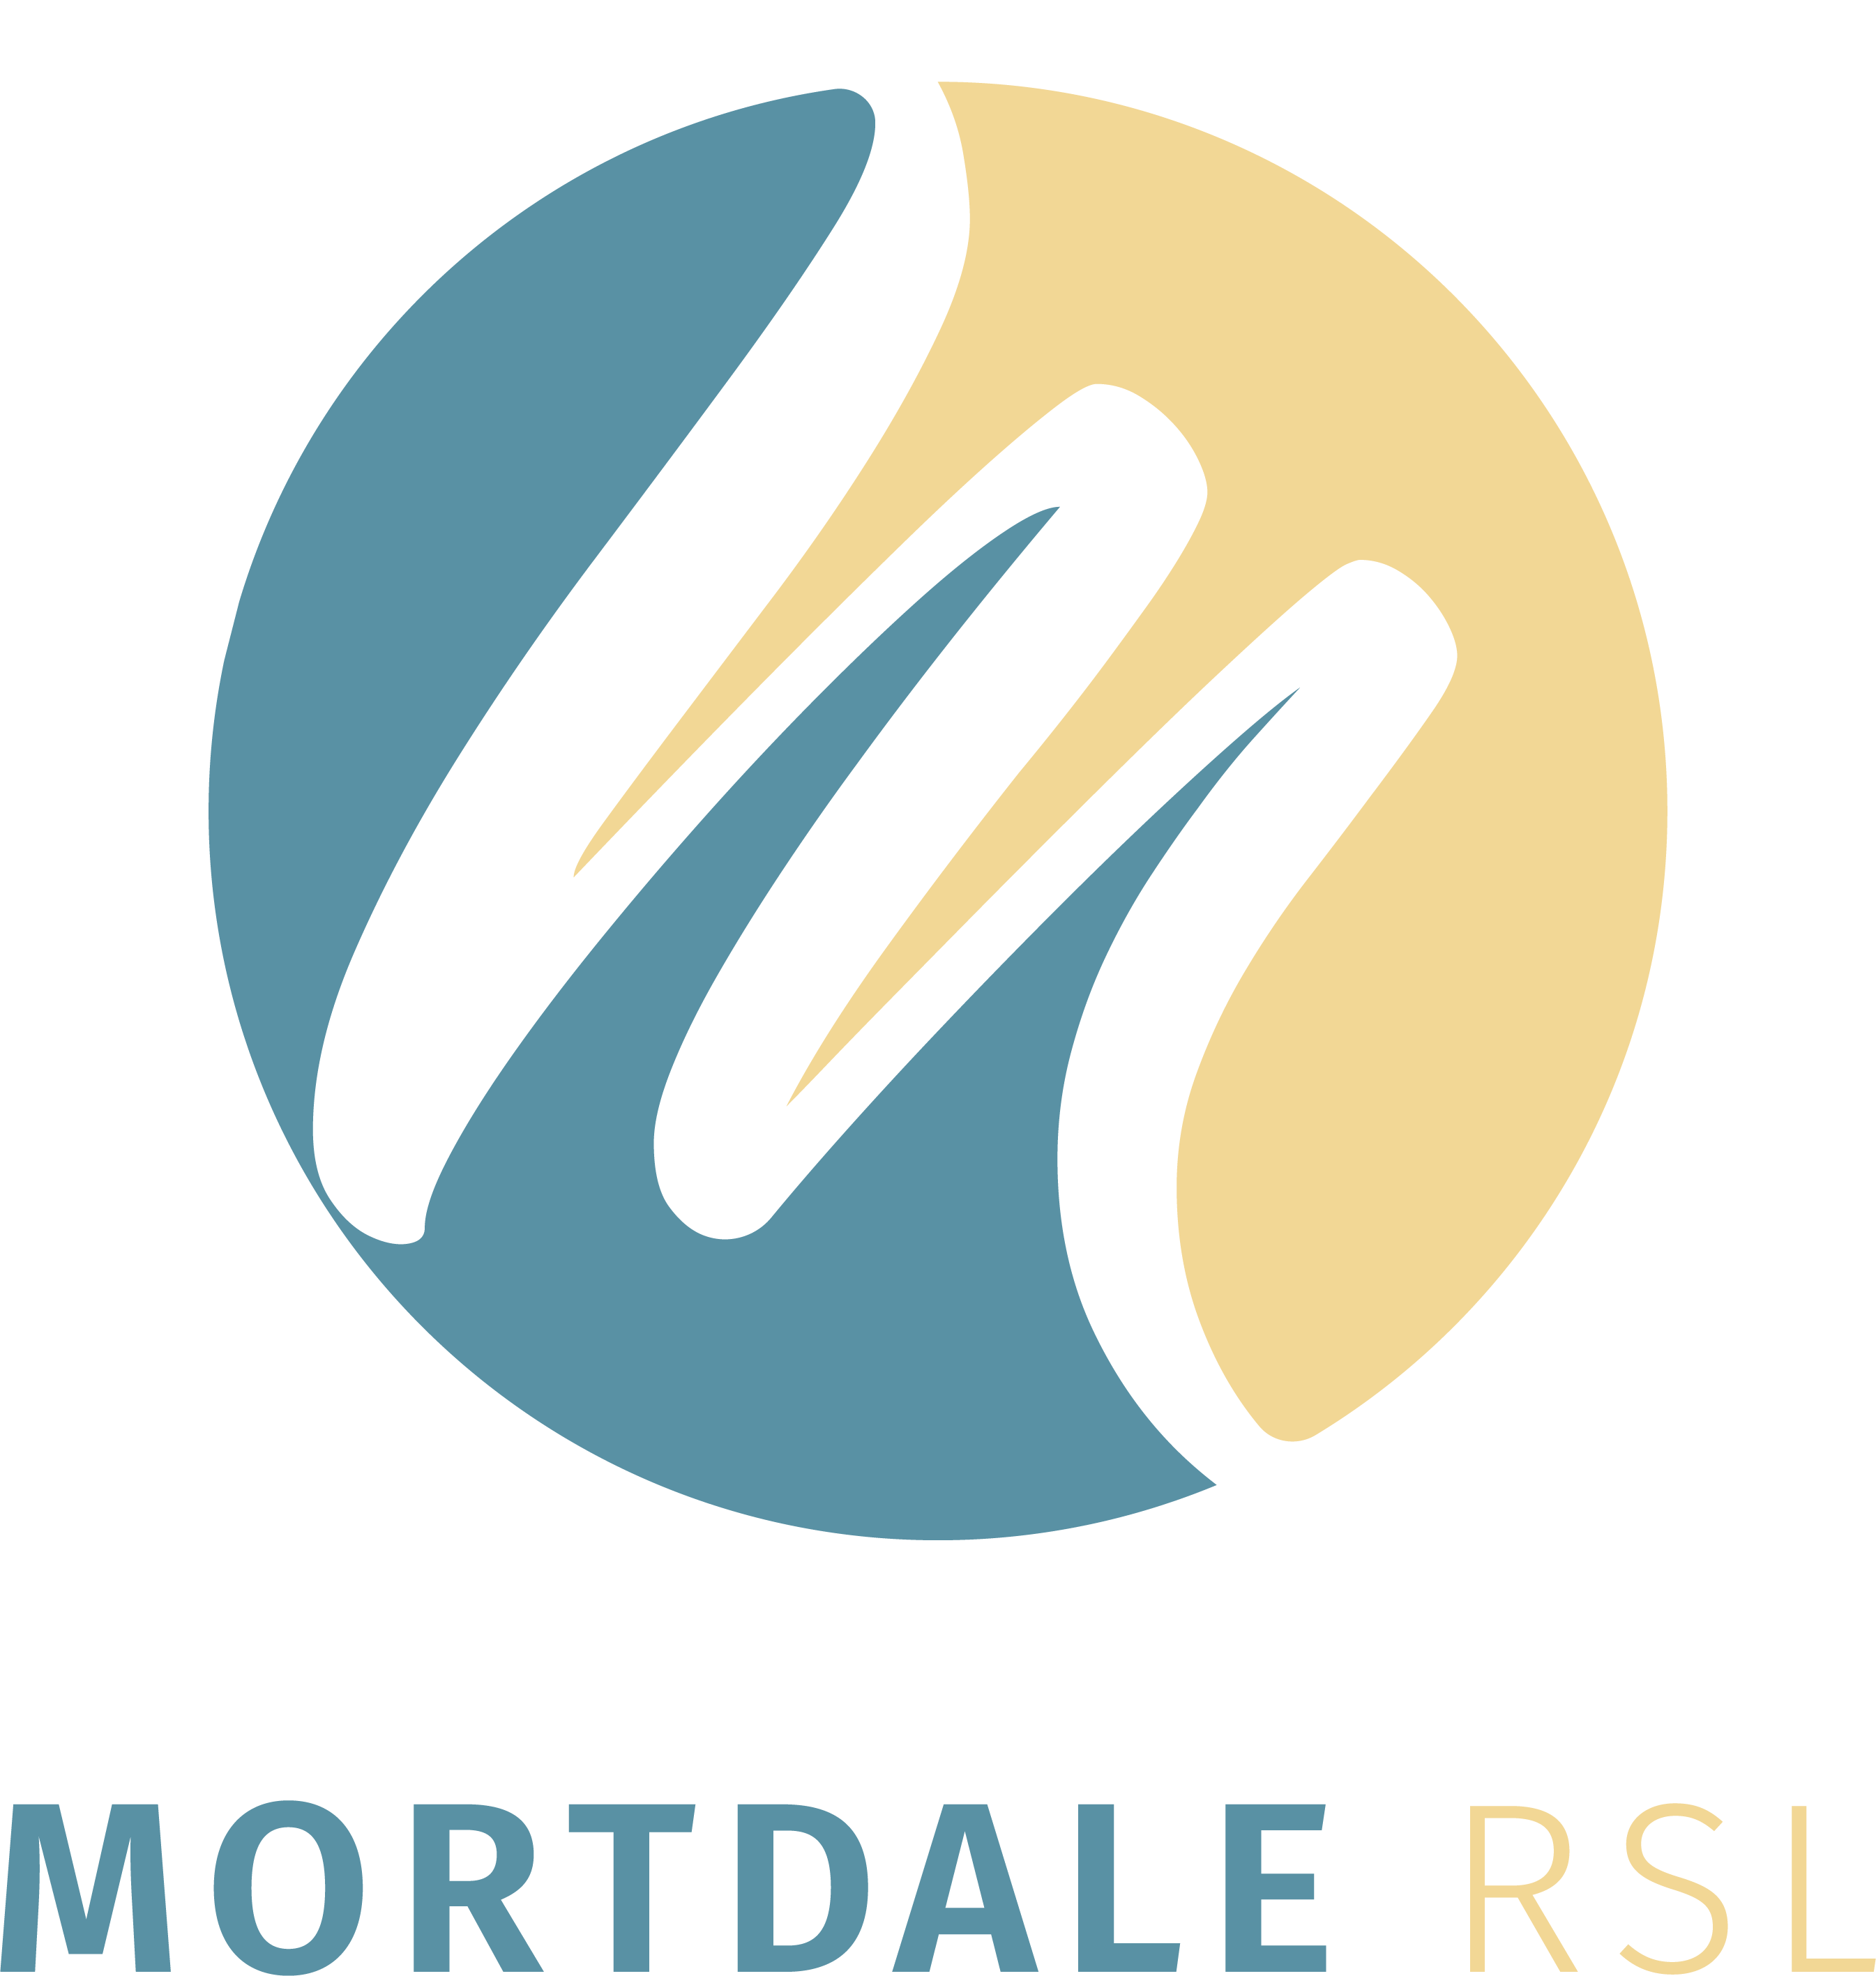 Mortdale RSL Community Club